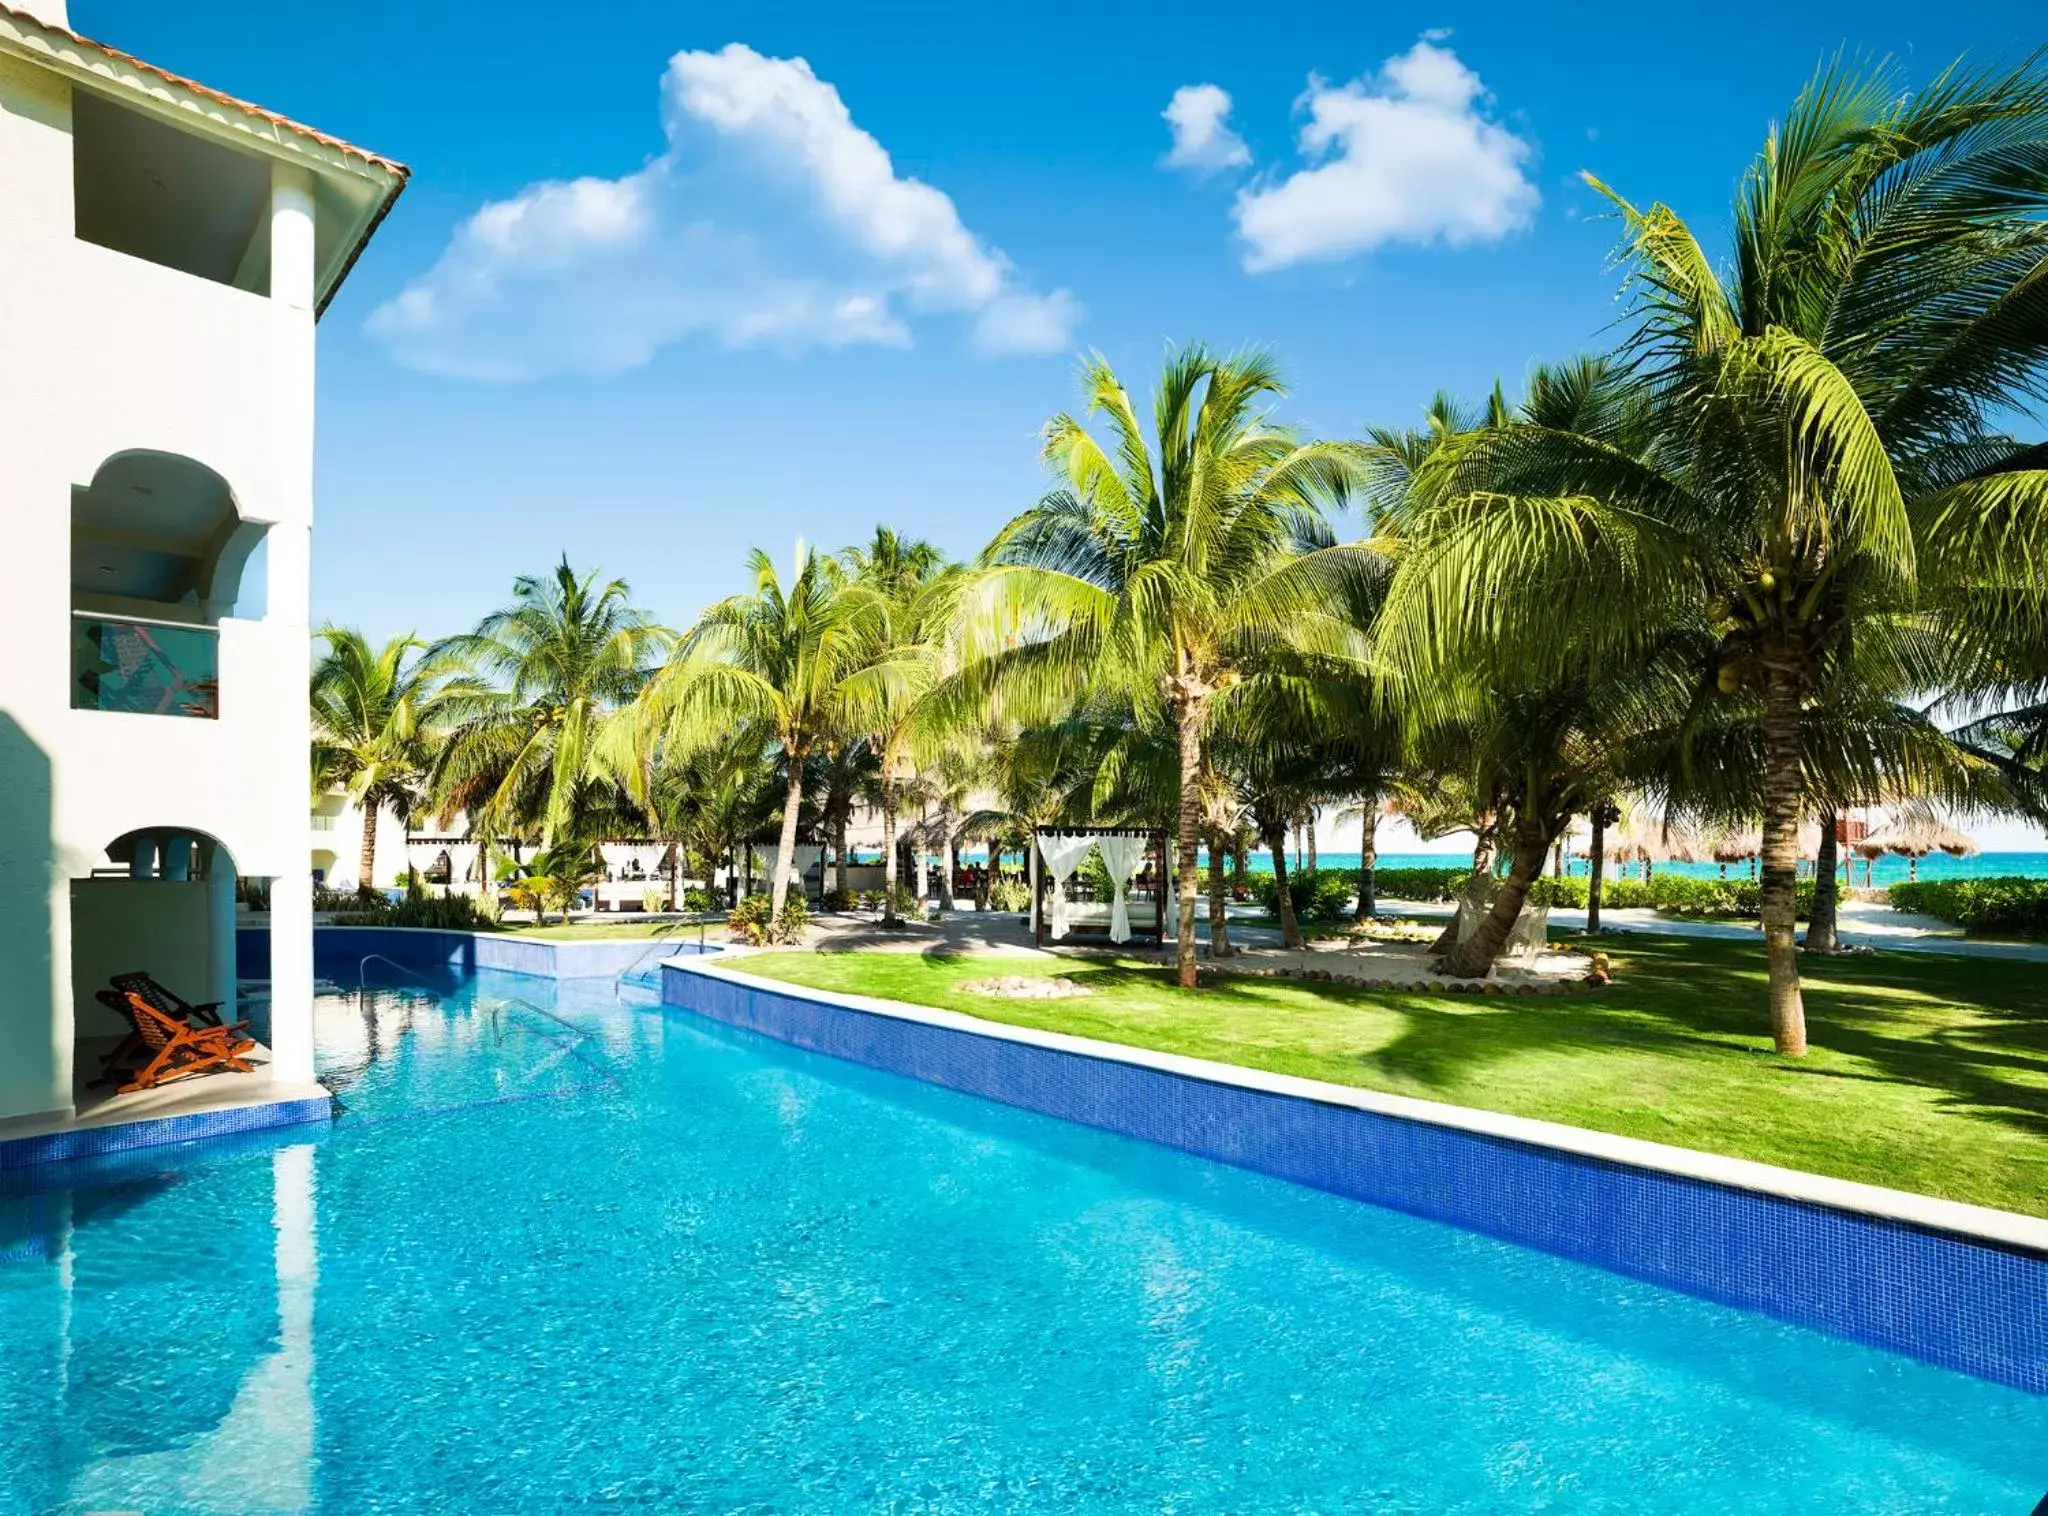 Property building, Swimming Pool in El Dorado Royale Gourmet Inclusive Resort & Spa by Karisma - All Inclusive